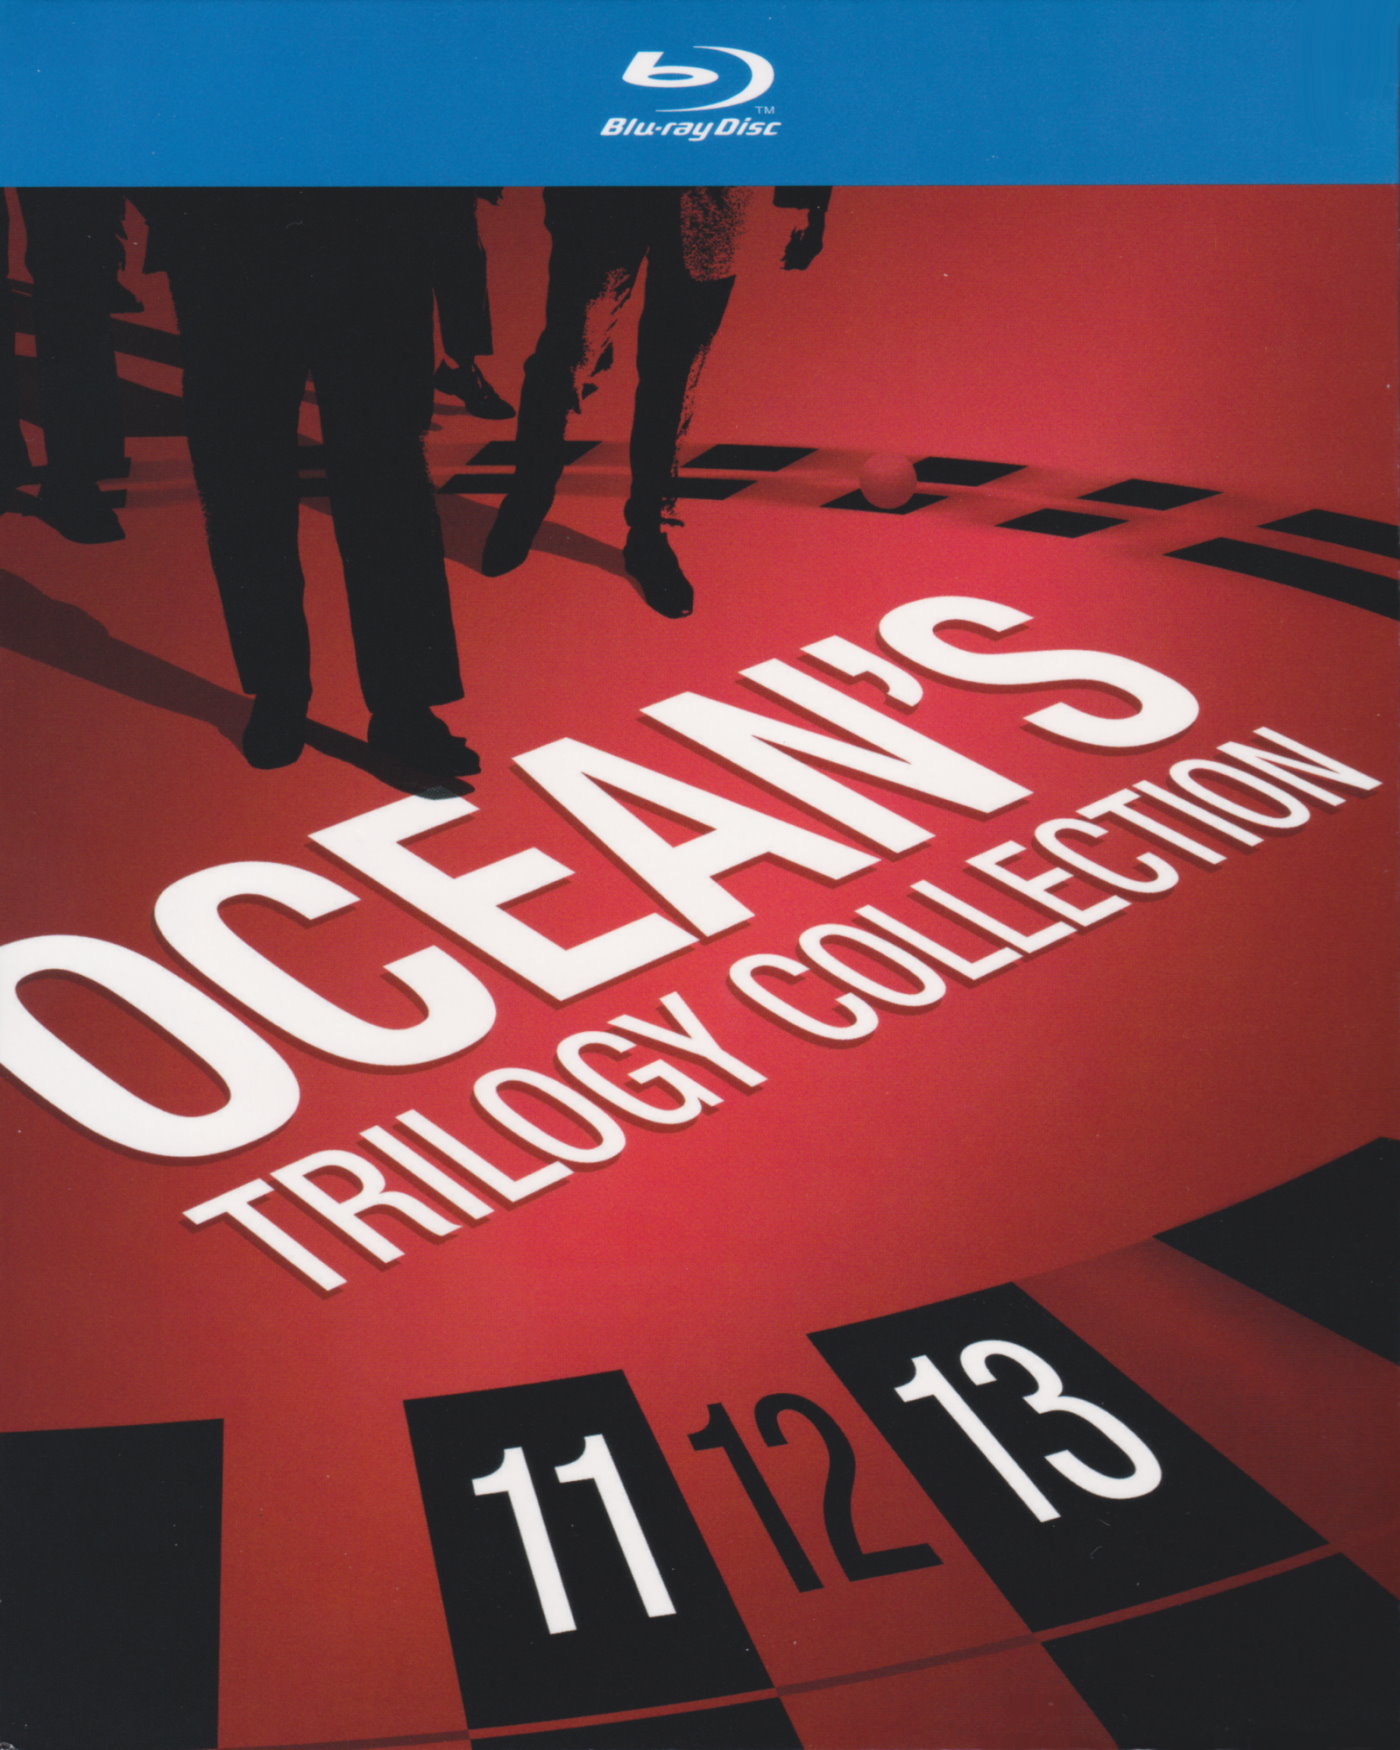 Cover - Ocean's Twelve.jpg